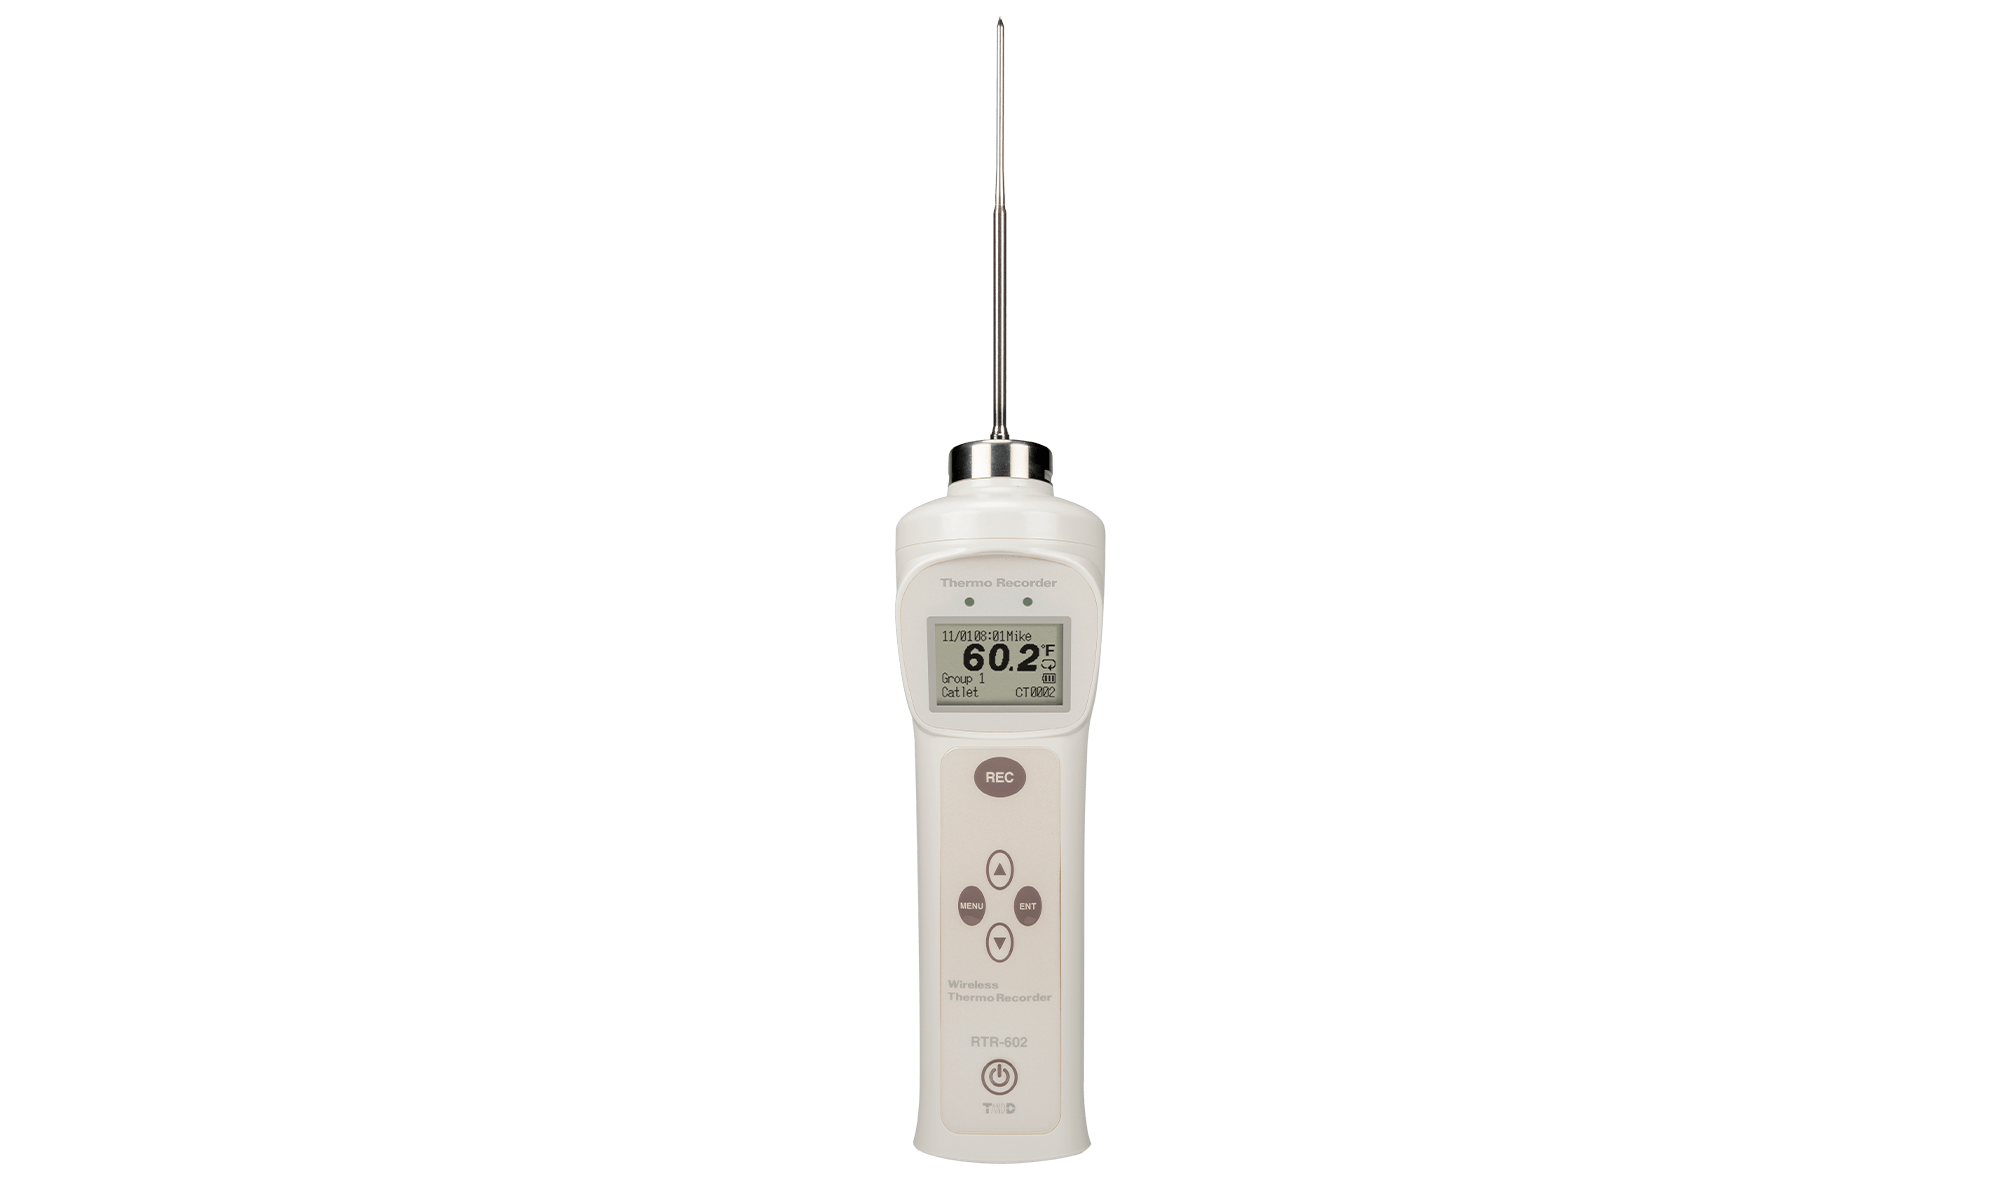 渠道	溫度 1ch，Pt1000 范圍	-60至250°C  通訊接口	短距離無線 傳感器 類型	長圓頭傳感器類型 防水 能力	IP68